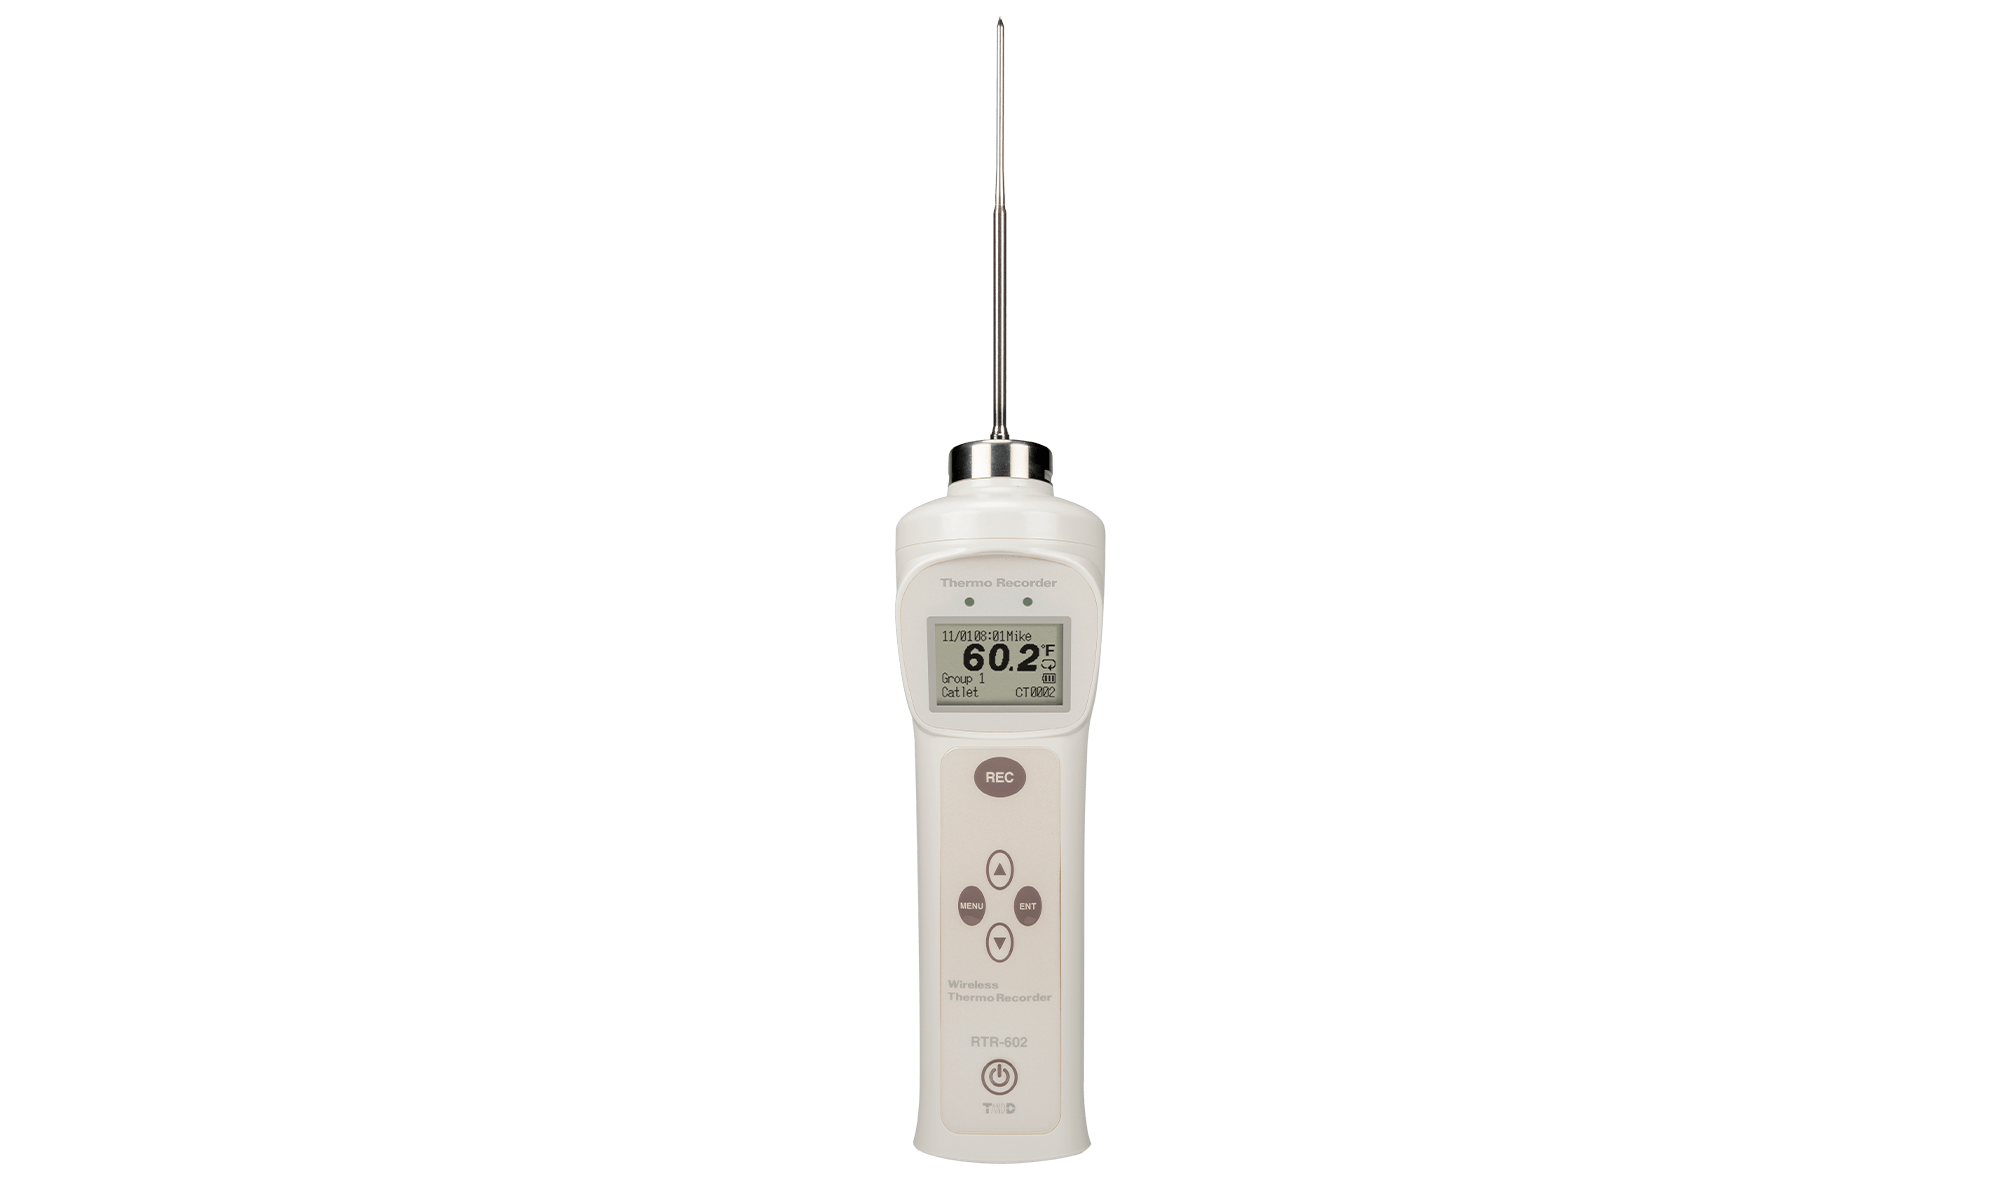 渠道	溫度 1ch，Pt1000 范圍	-60至250°C  通訊接口	短距離無線 傳感器 類型	長圓頭傳感器類型 防水 能力	IP68